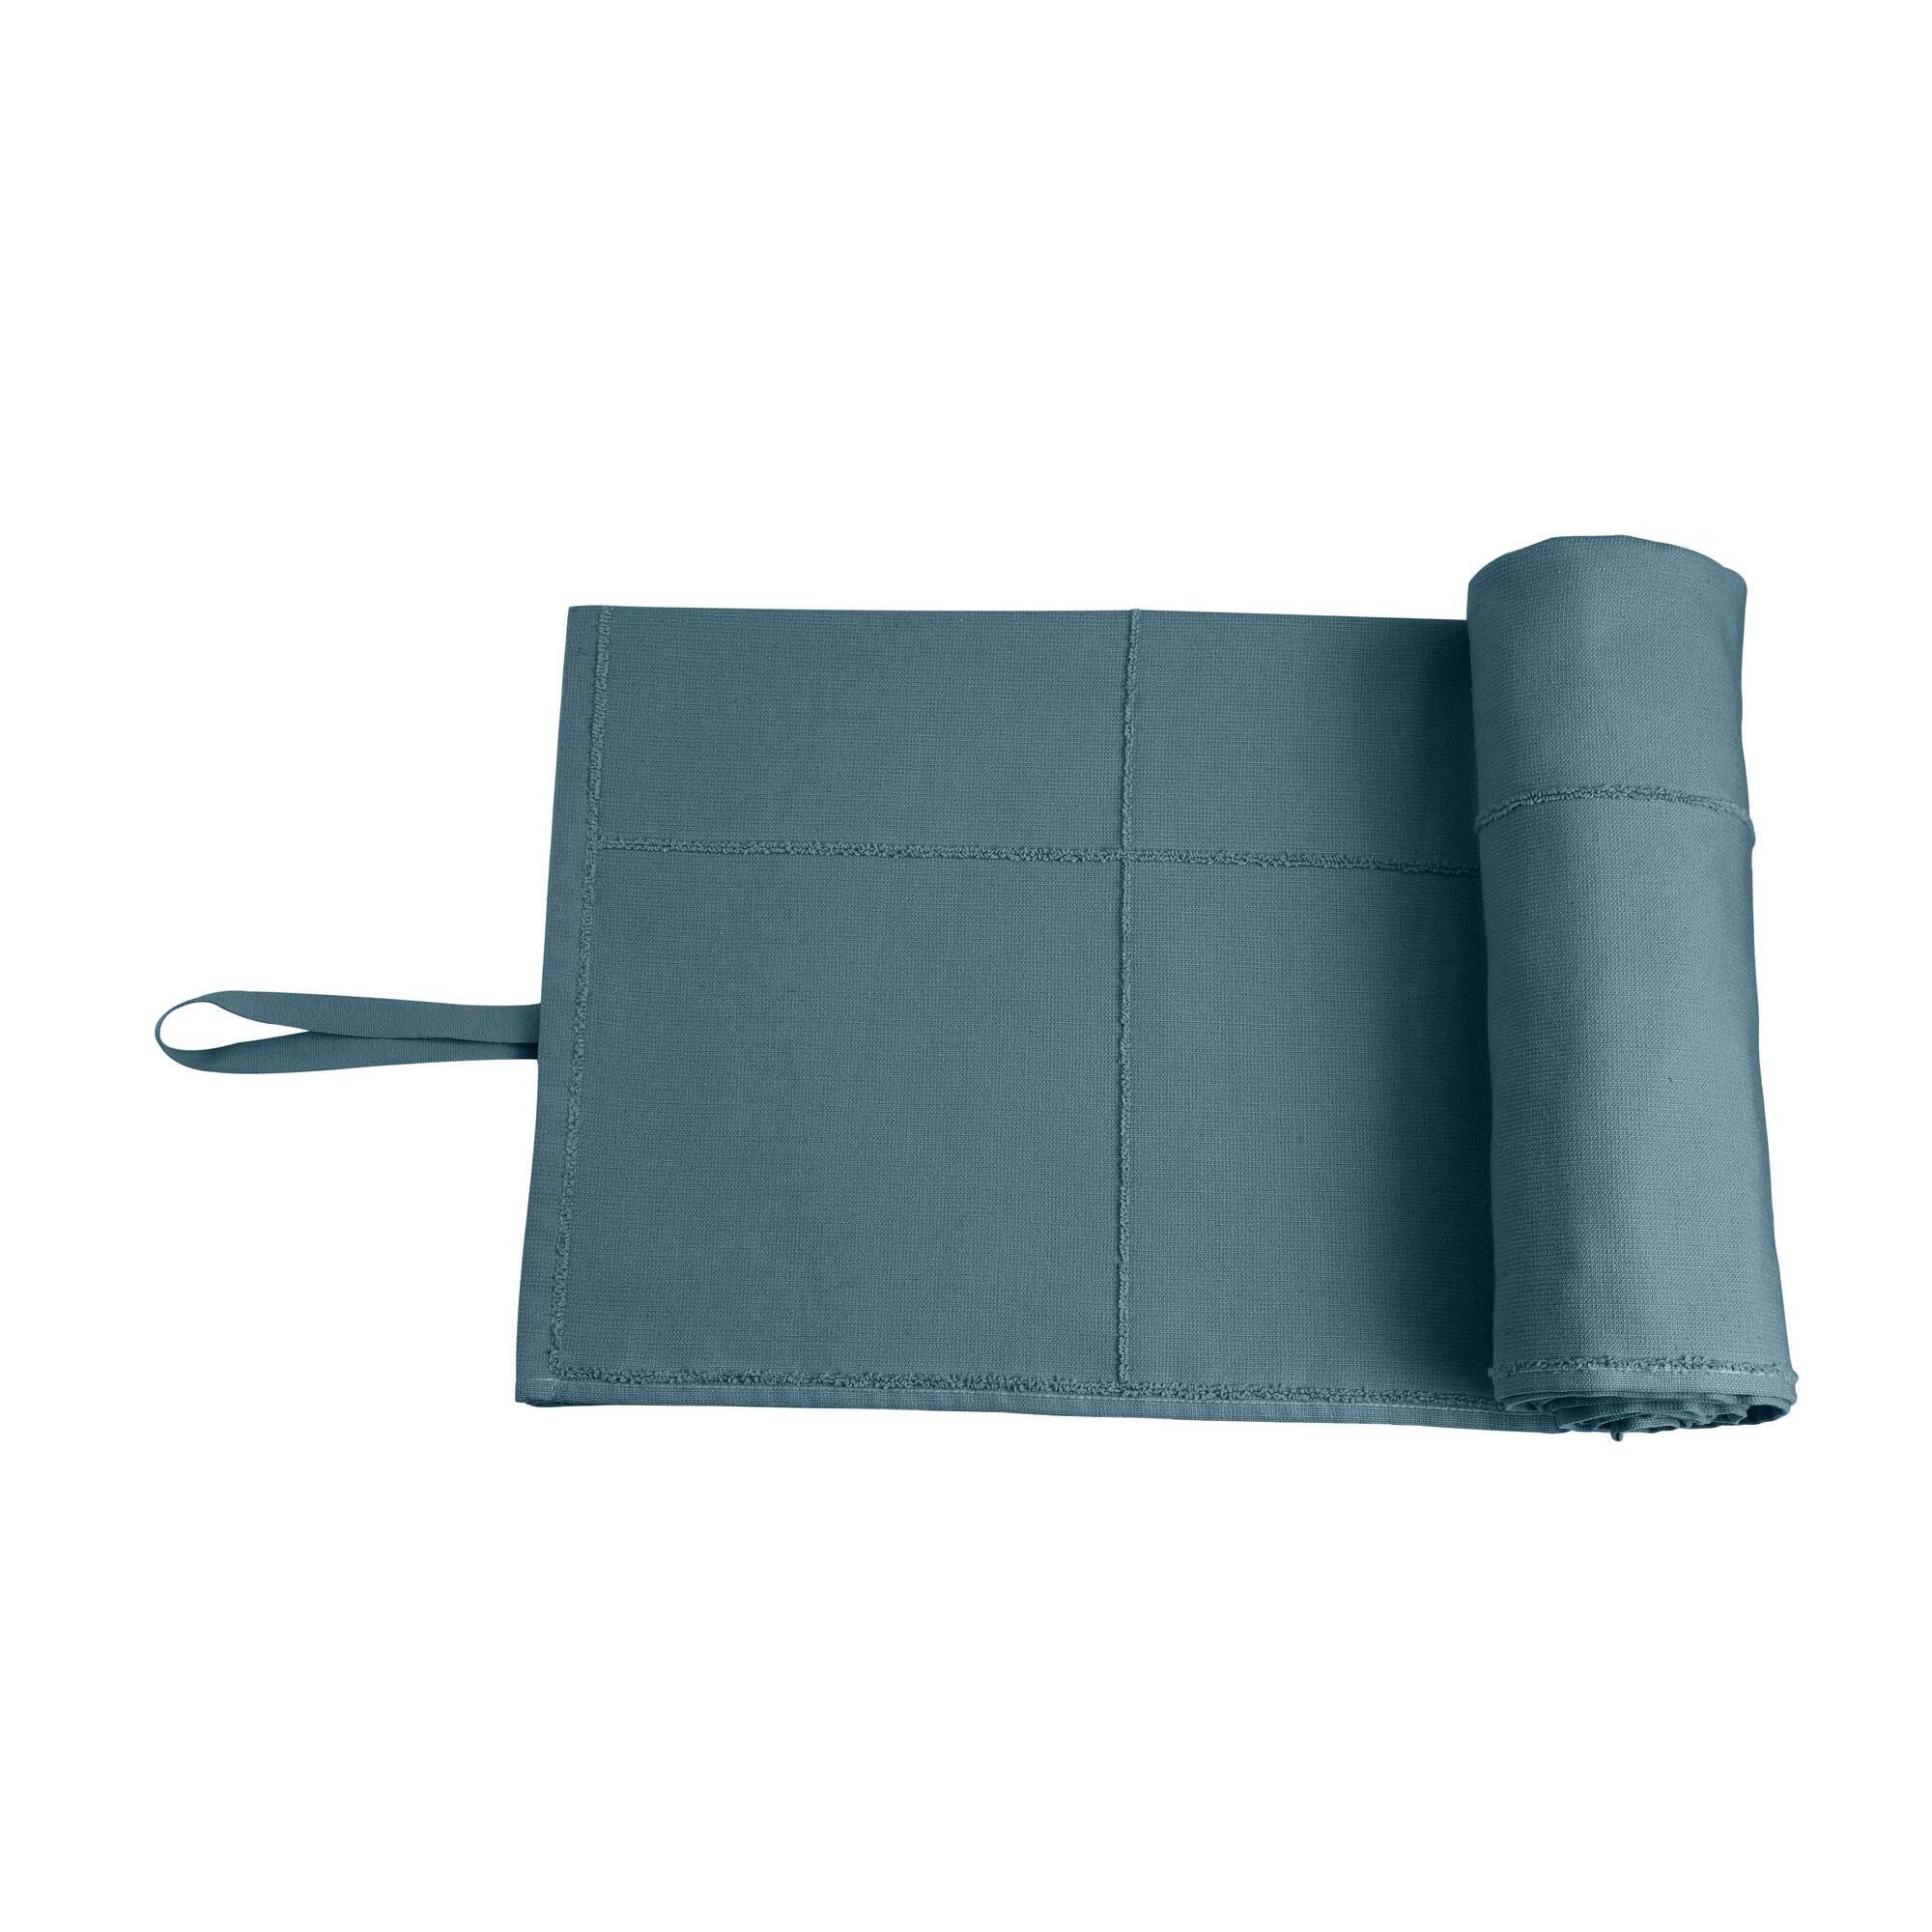 CALM Håndklæde to Go, Grey blue 60x120 cm